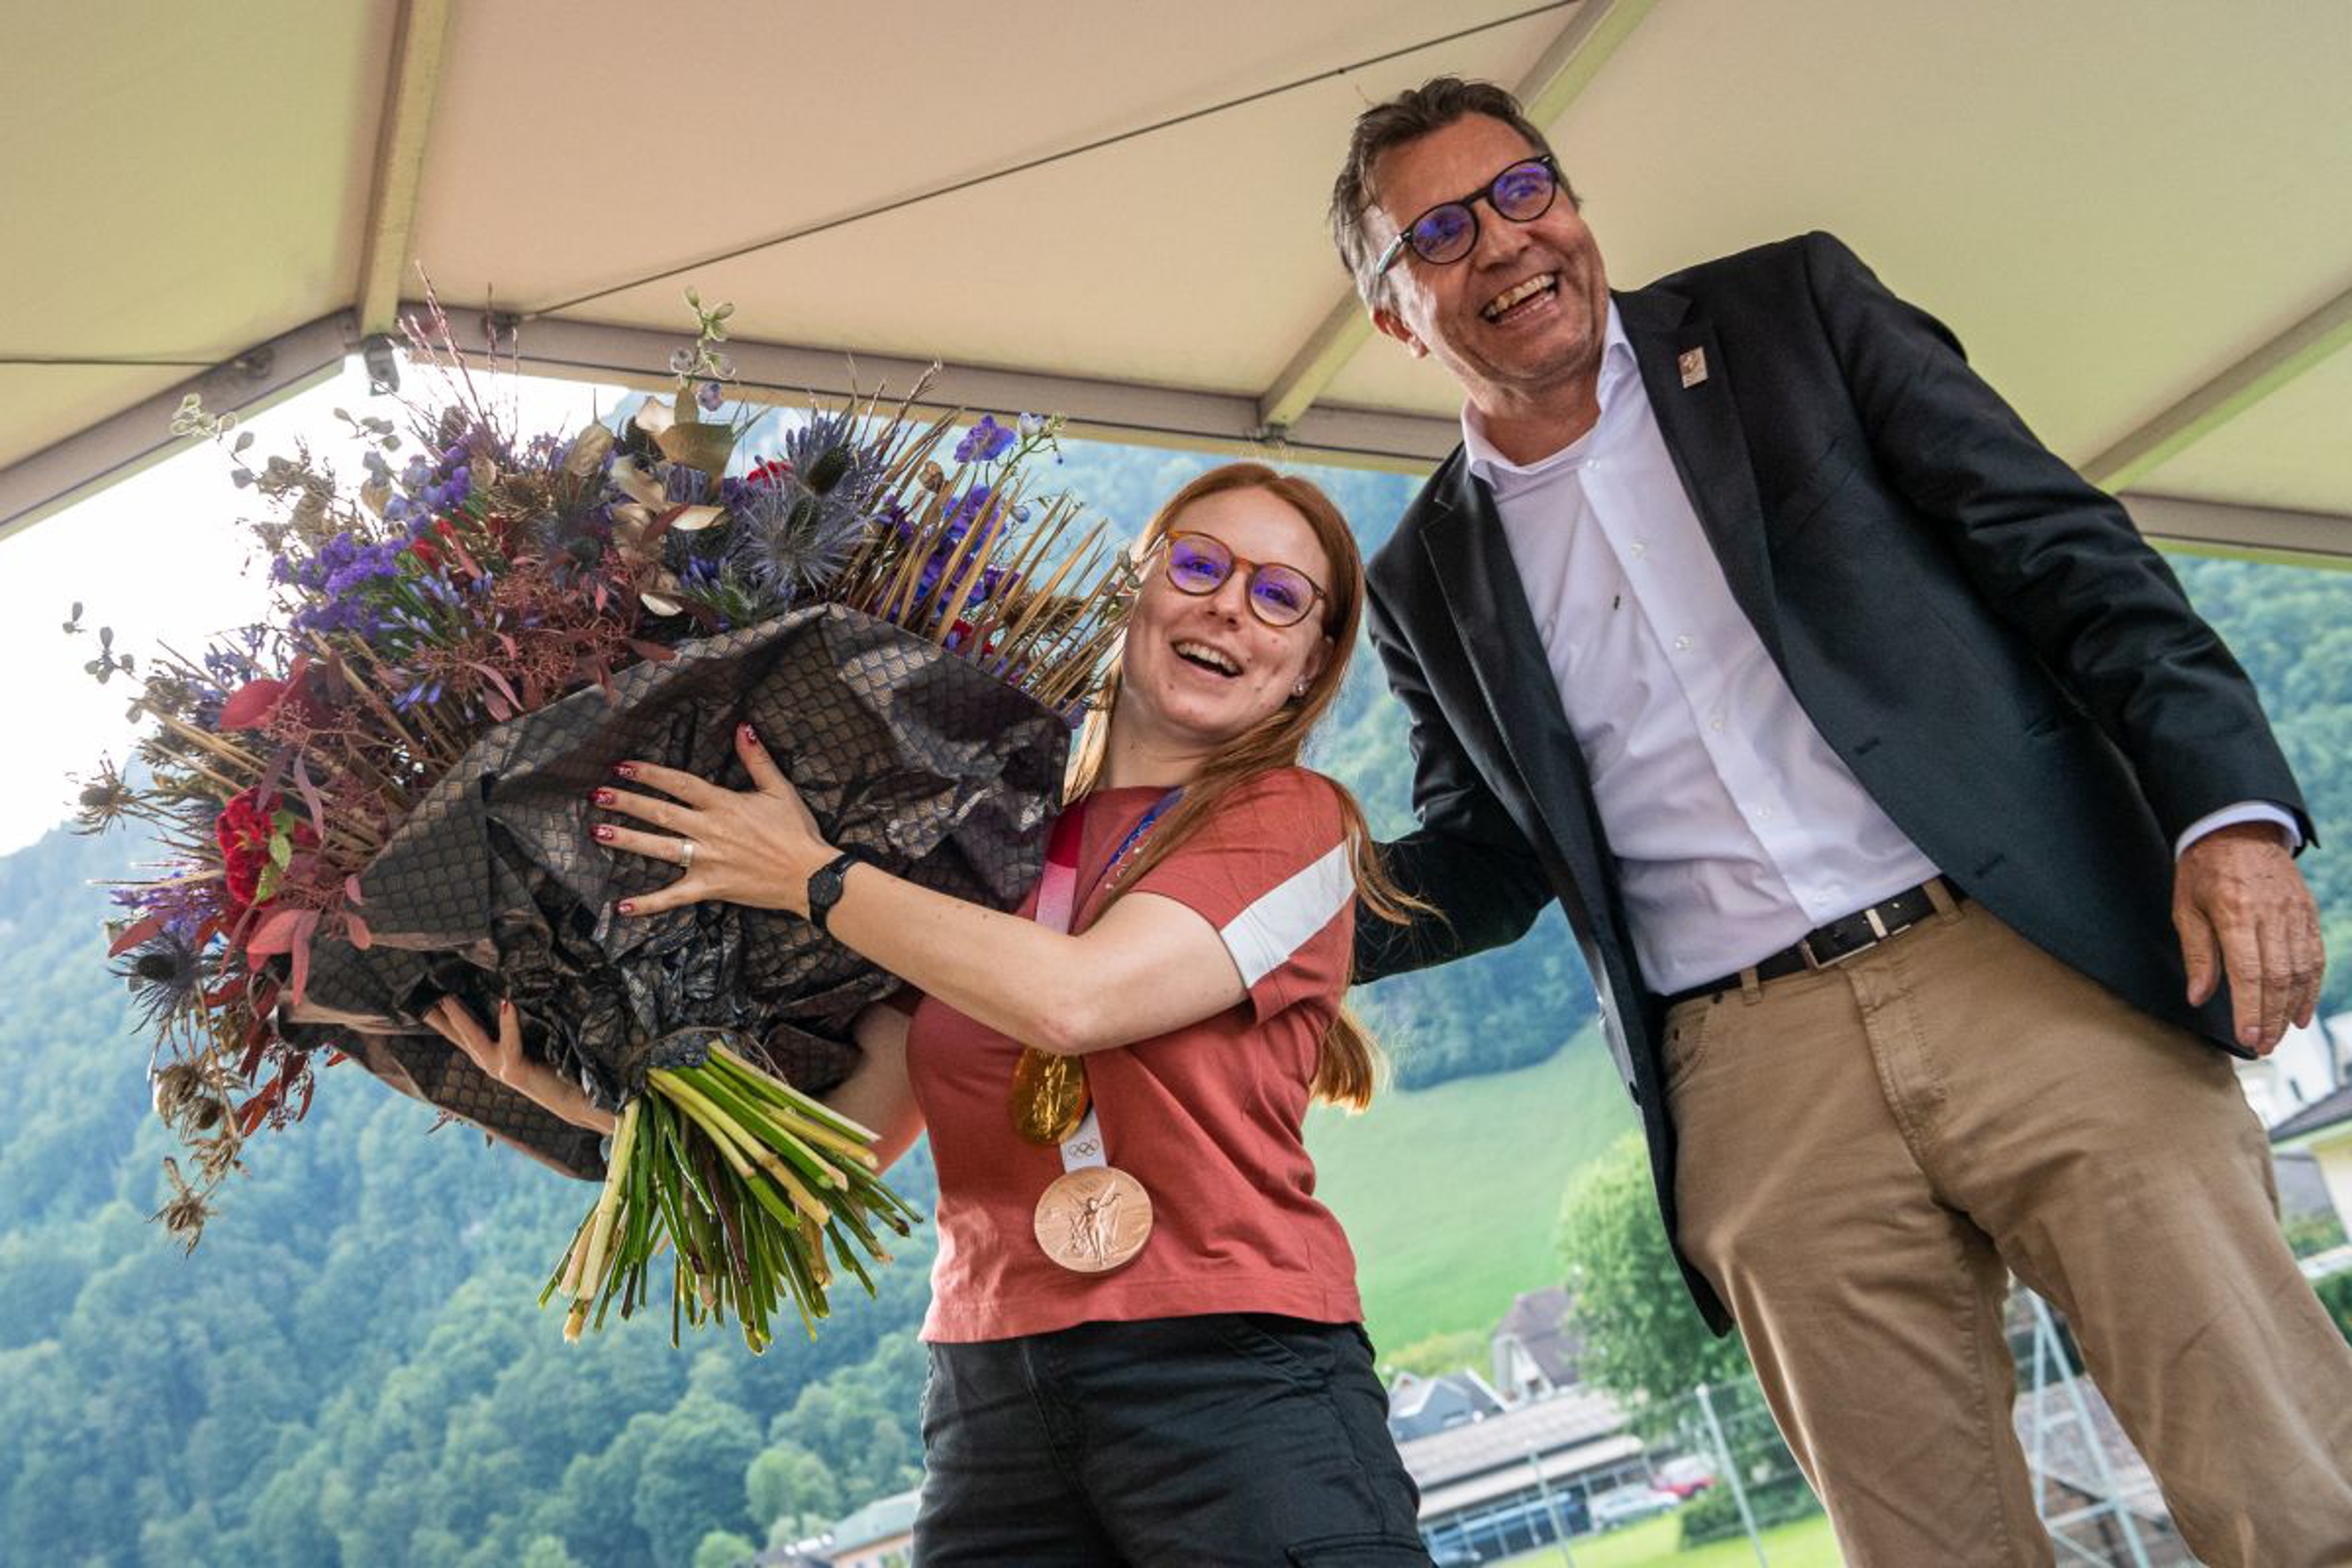 Daniel Bareiss, Exekutivratsmitglied von Swiss Olympic, überreichte der Olympiasiegerin einen grossen Blumemstrauss. Bild: fotozug.ch